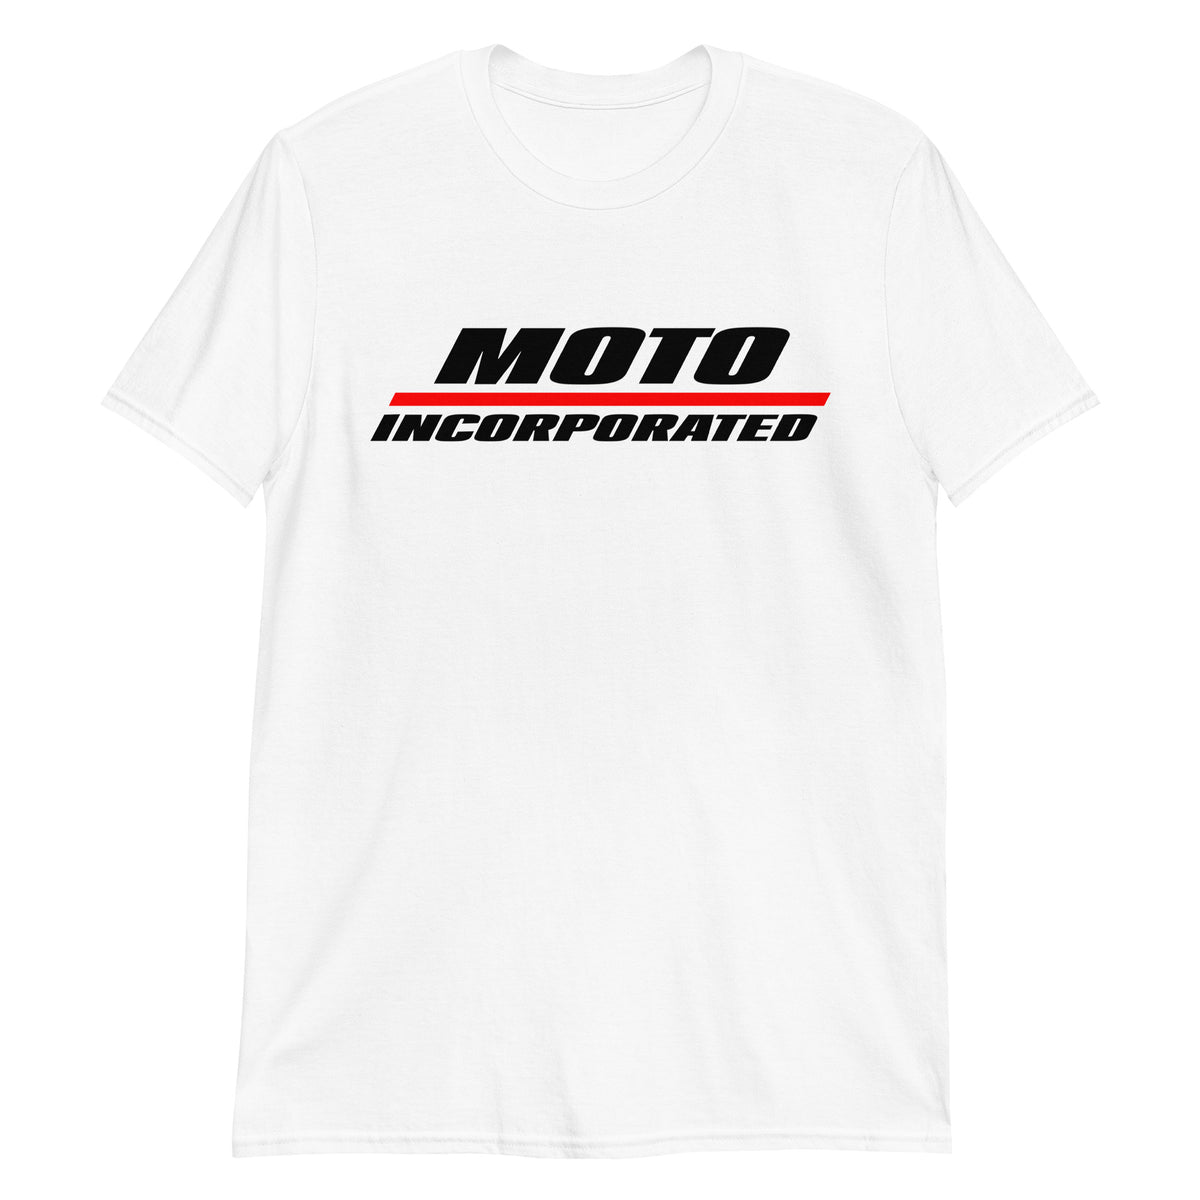 Moto Incorporated / P1 - T-Shirt